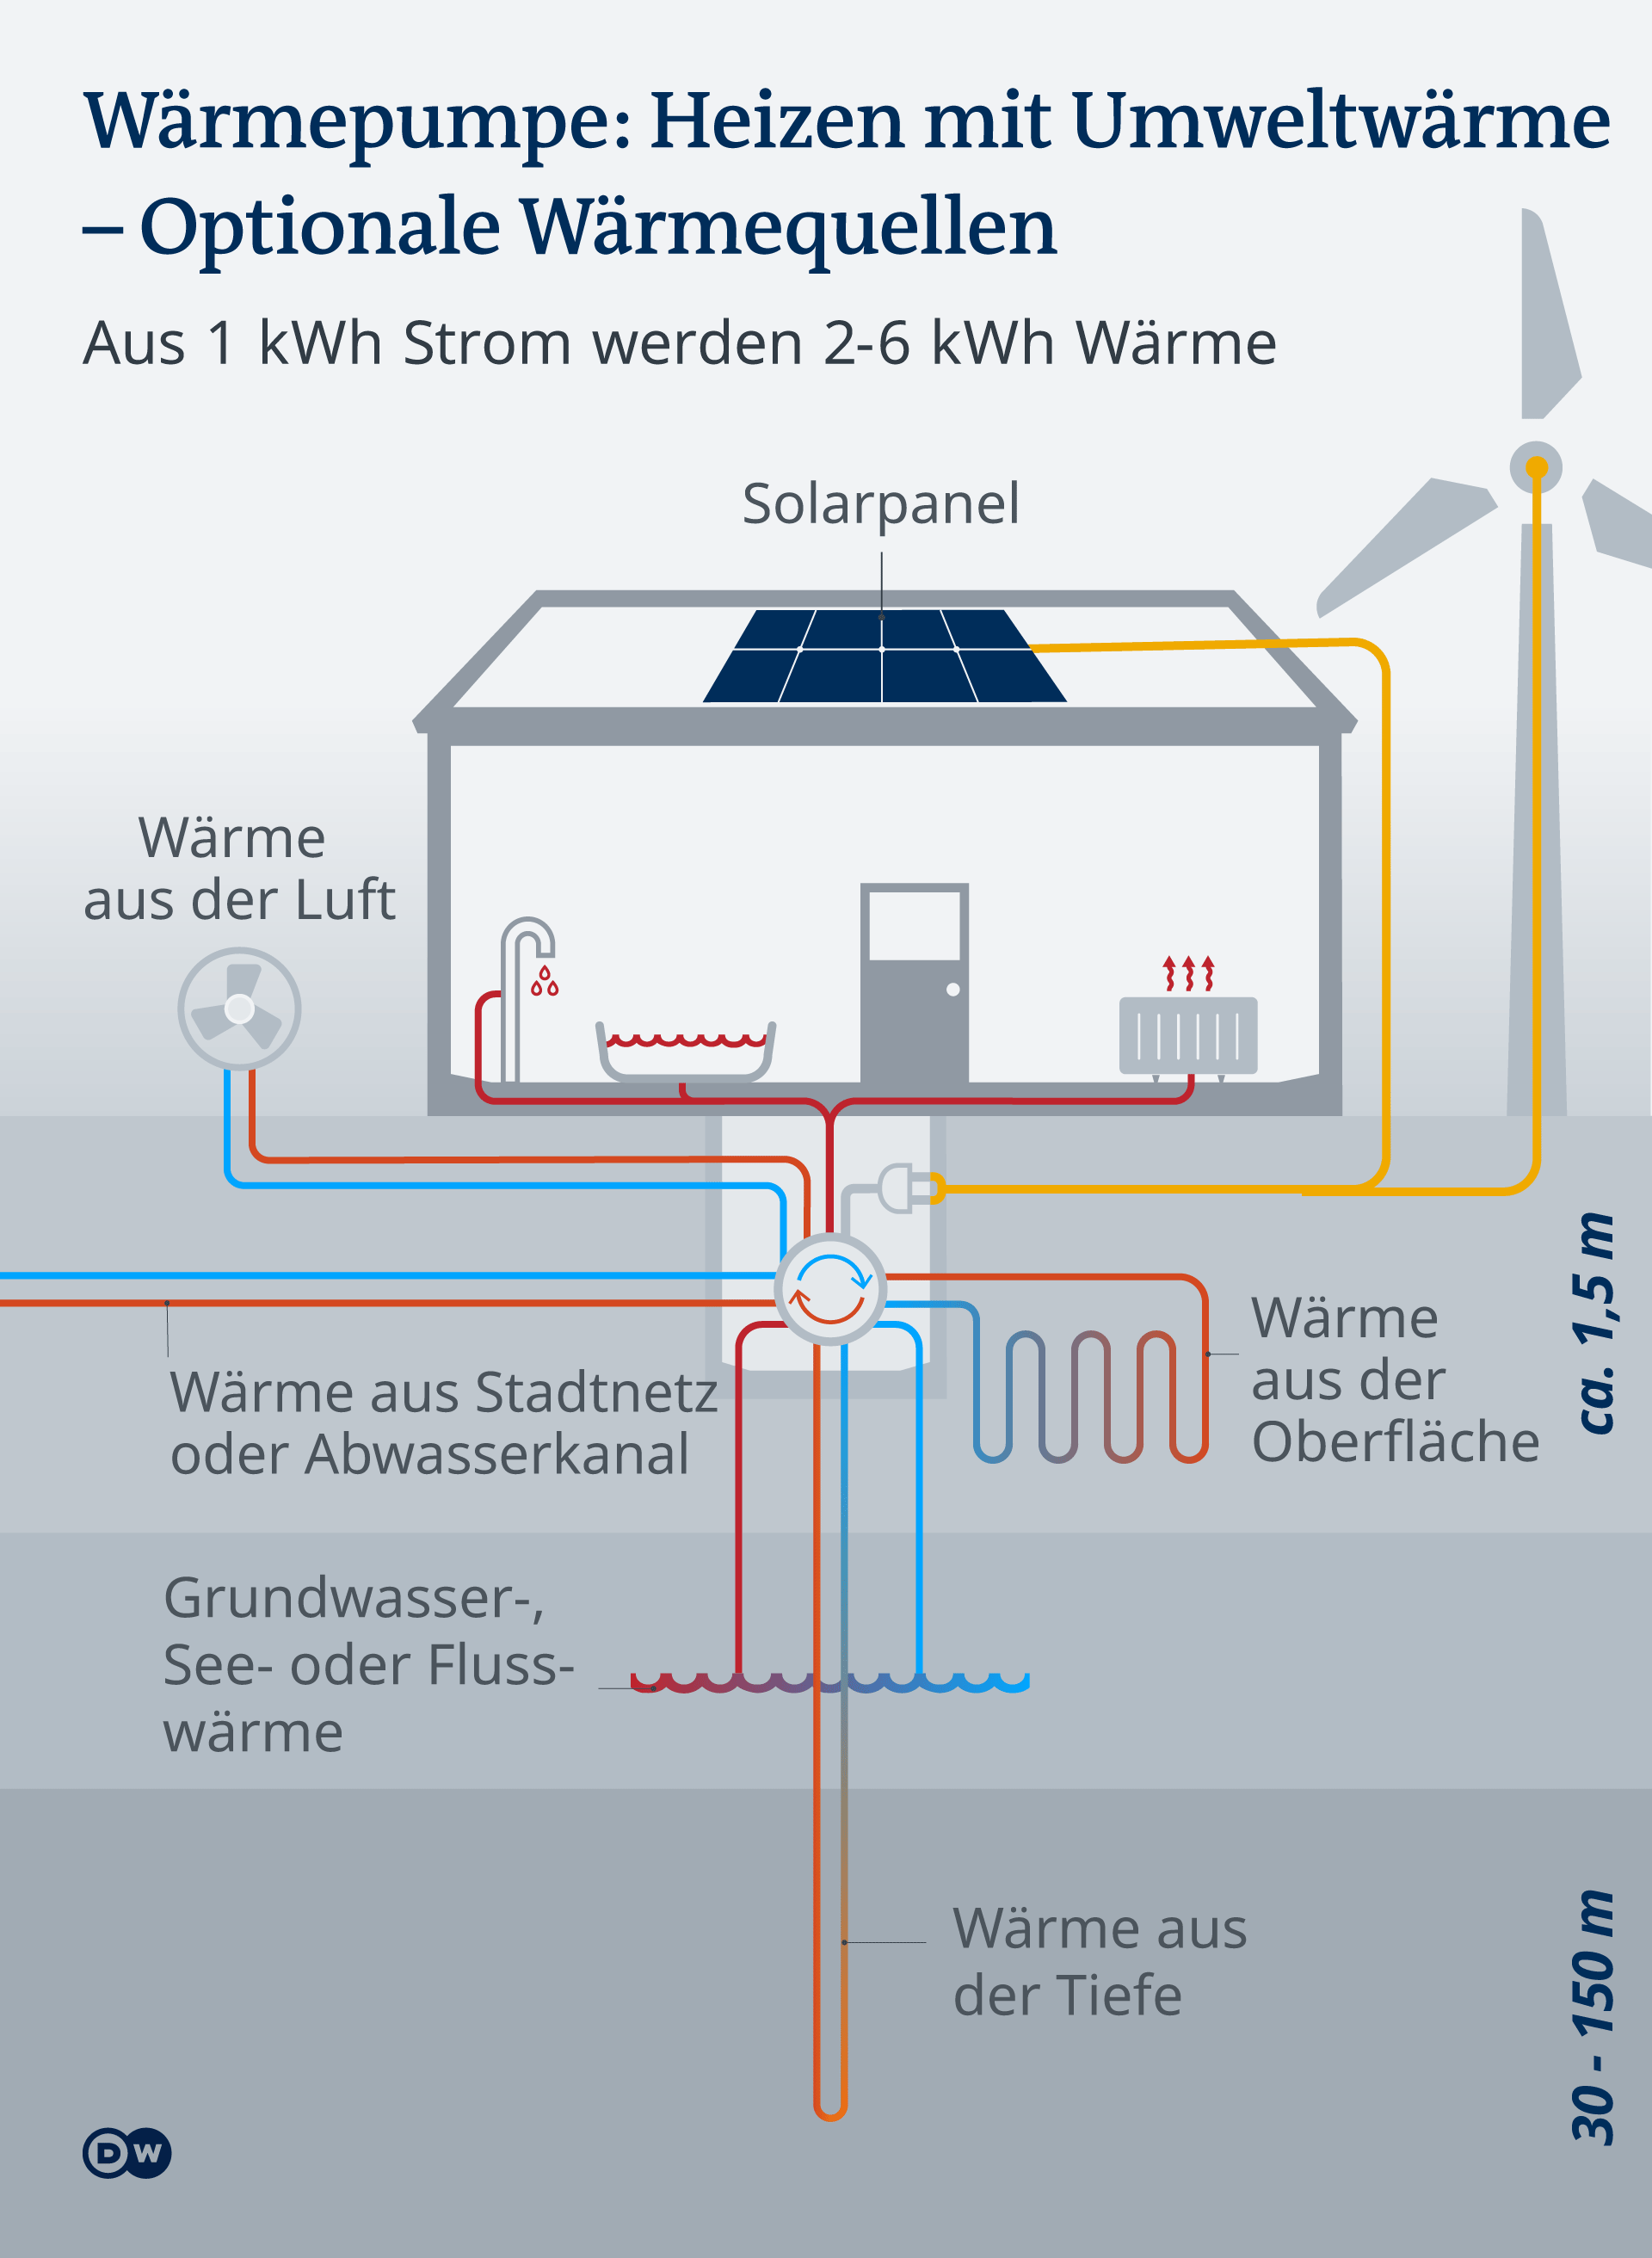 Infografik Wärmepumpe: Heizen mit Umweltwärme mit Sonden, Abwasser, Wasser, Luft, Erde